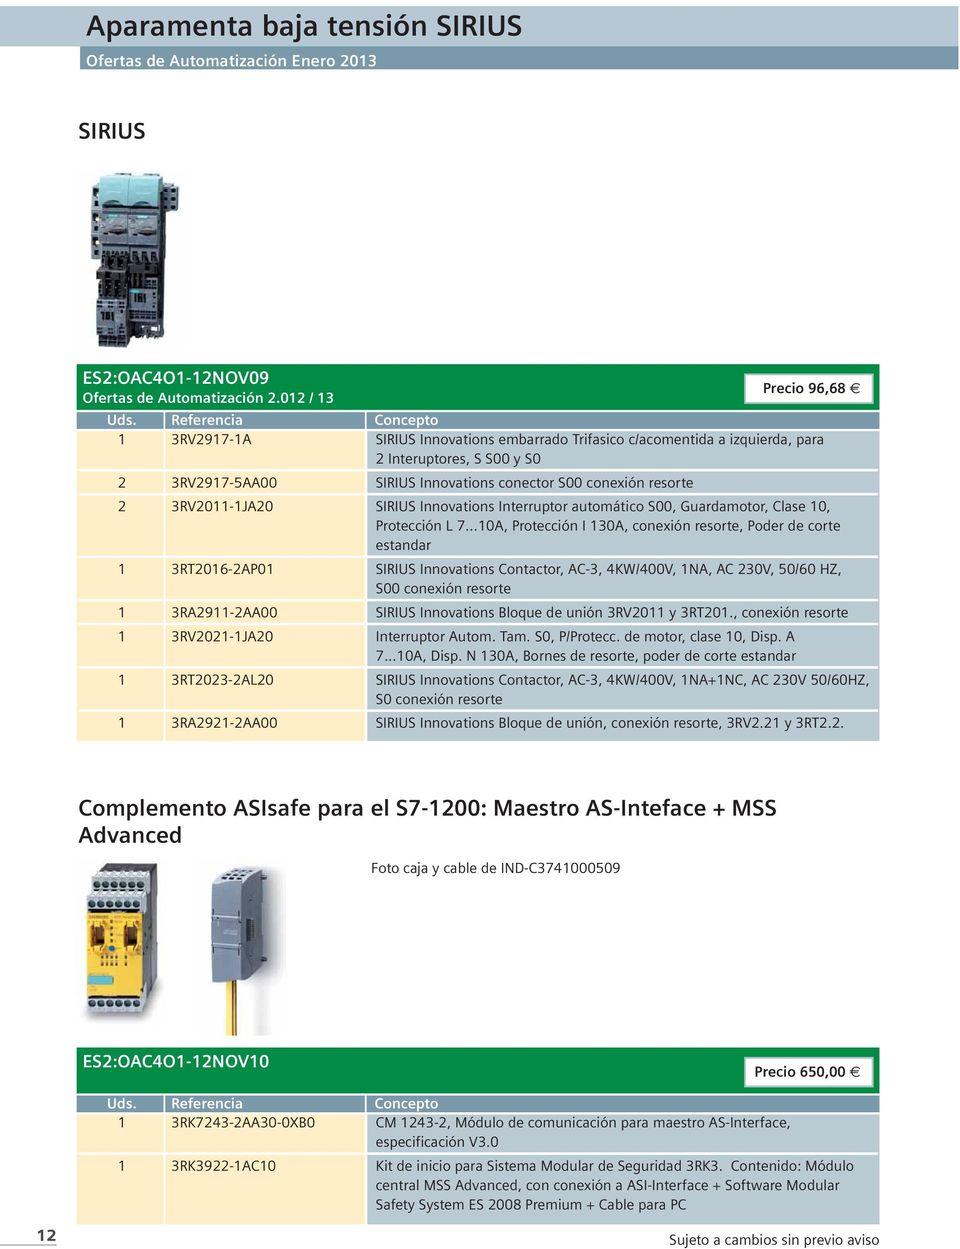 3RV2011-1JA20 SIRIUS Innovations Interruptor automático S00, Guardamotor, Clase 10, Protección L 7.